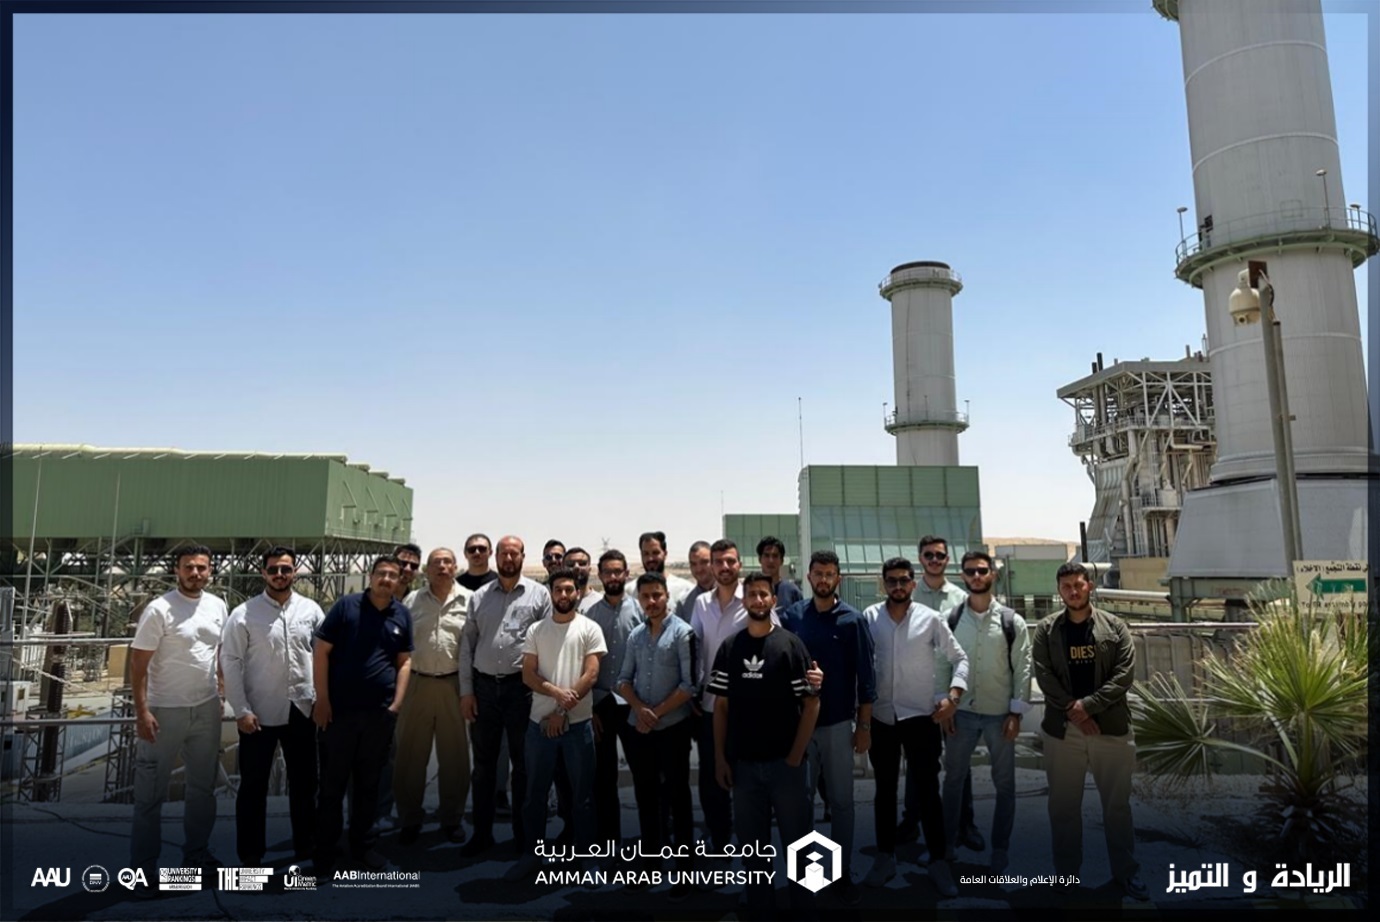 قسم هندسة الطاقة المتجددة في "عمان العربية" يقوم برحلة علمية الى شركة السمرا لتوليد الكهرباء